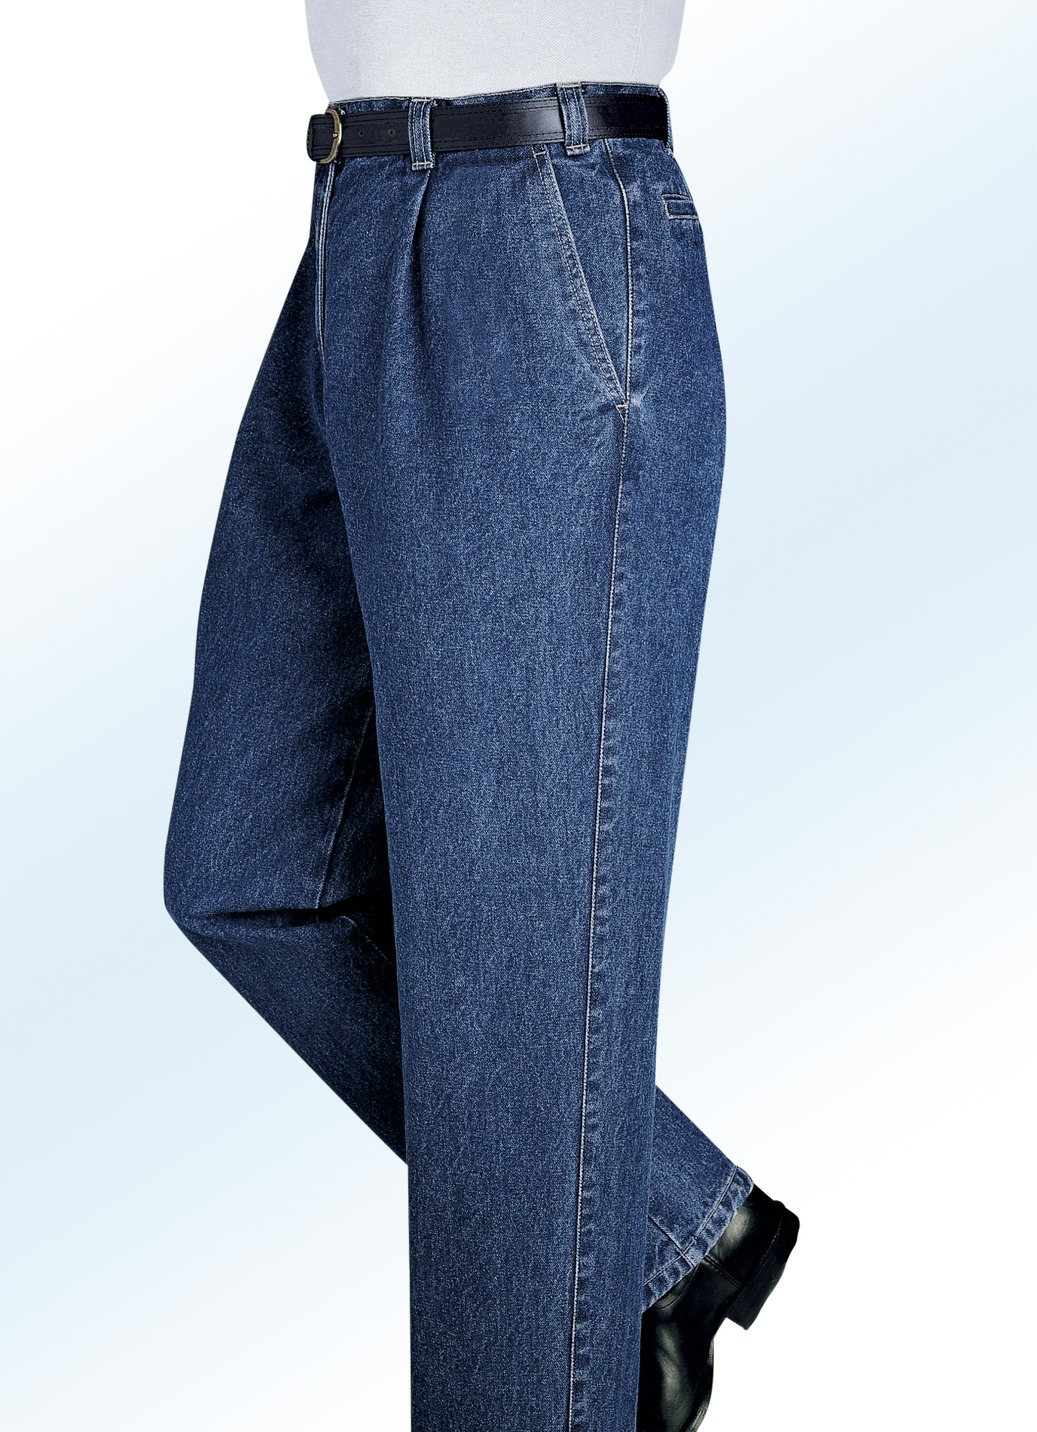 "Francesco Botti"-Jeans in 2 Qualitäten und 3 Farben, Qualität 2. Qualität, Jeansblau, Größe 57 von FRANCESCO BOTTI